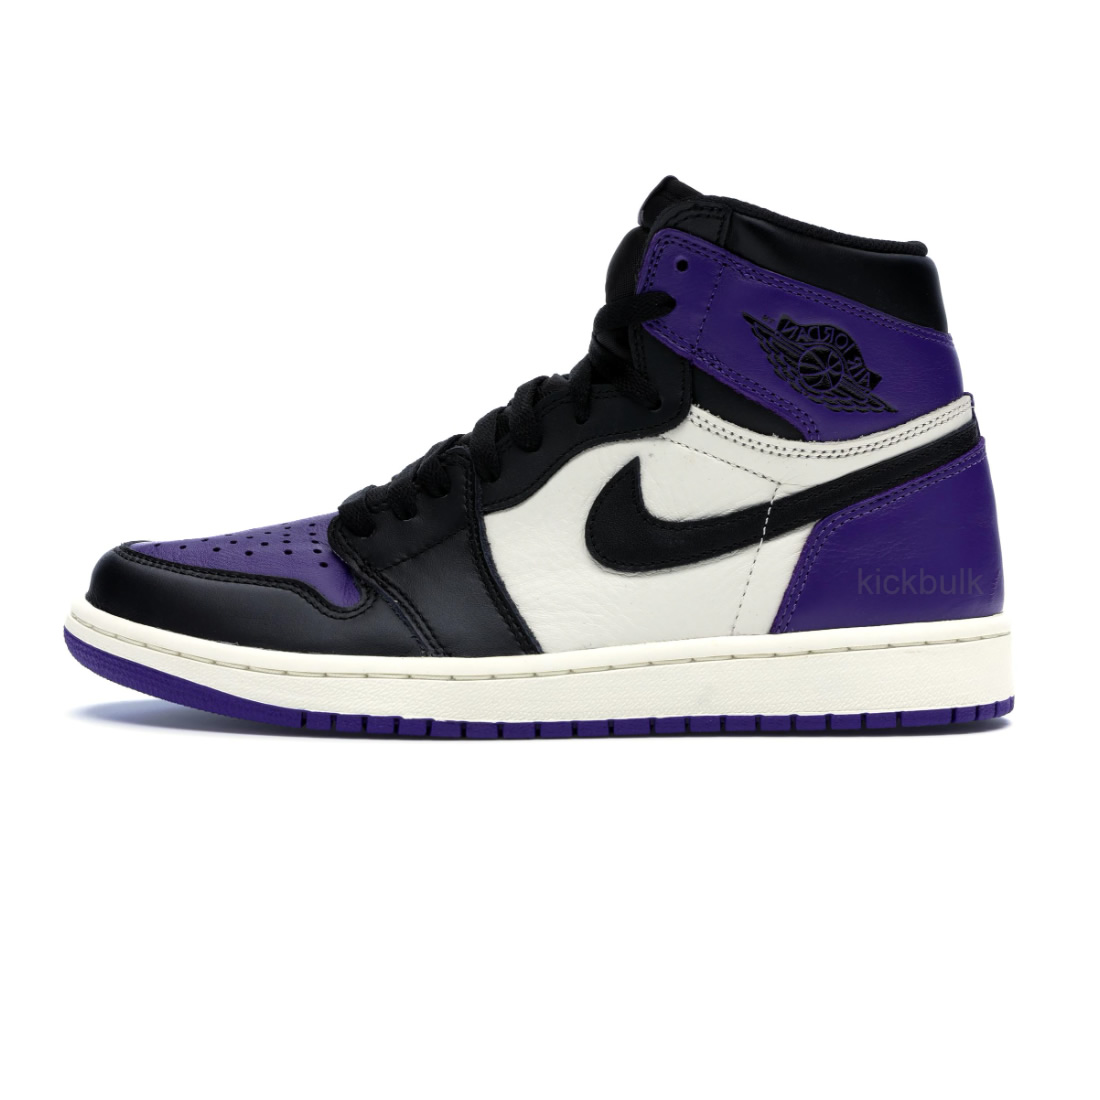 Nike Air Jordan 1 Og High Retro Court Purple 555088 501 1 - www.kickbulk.org